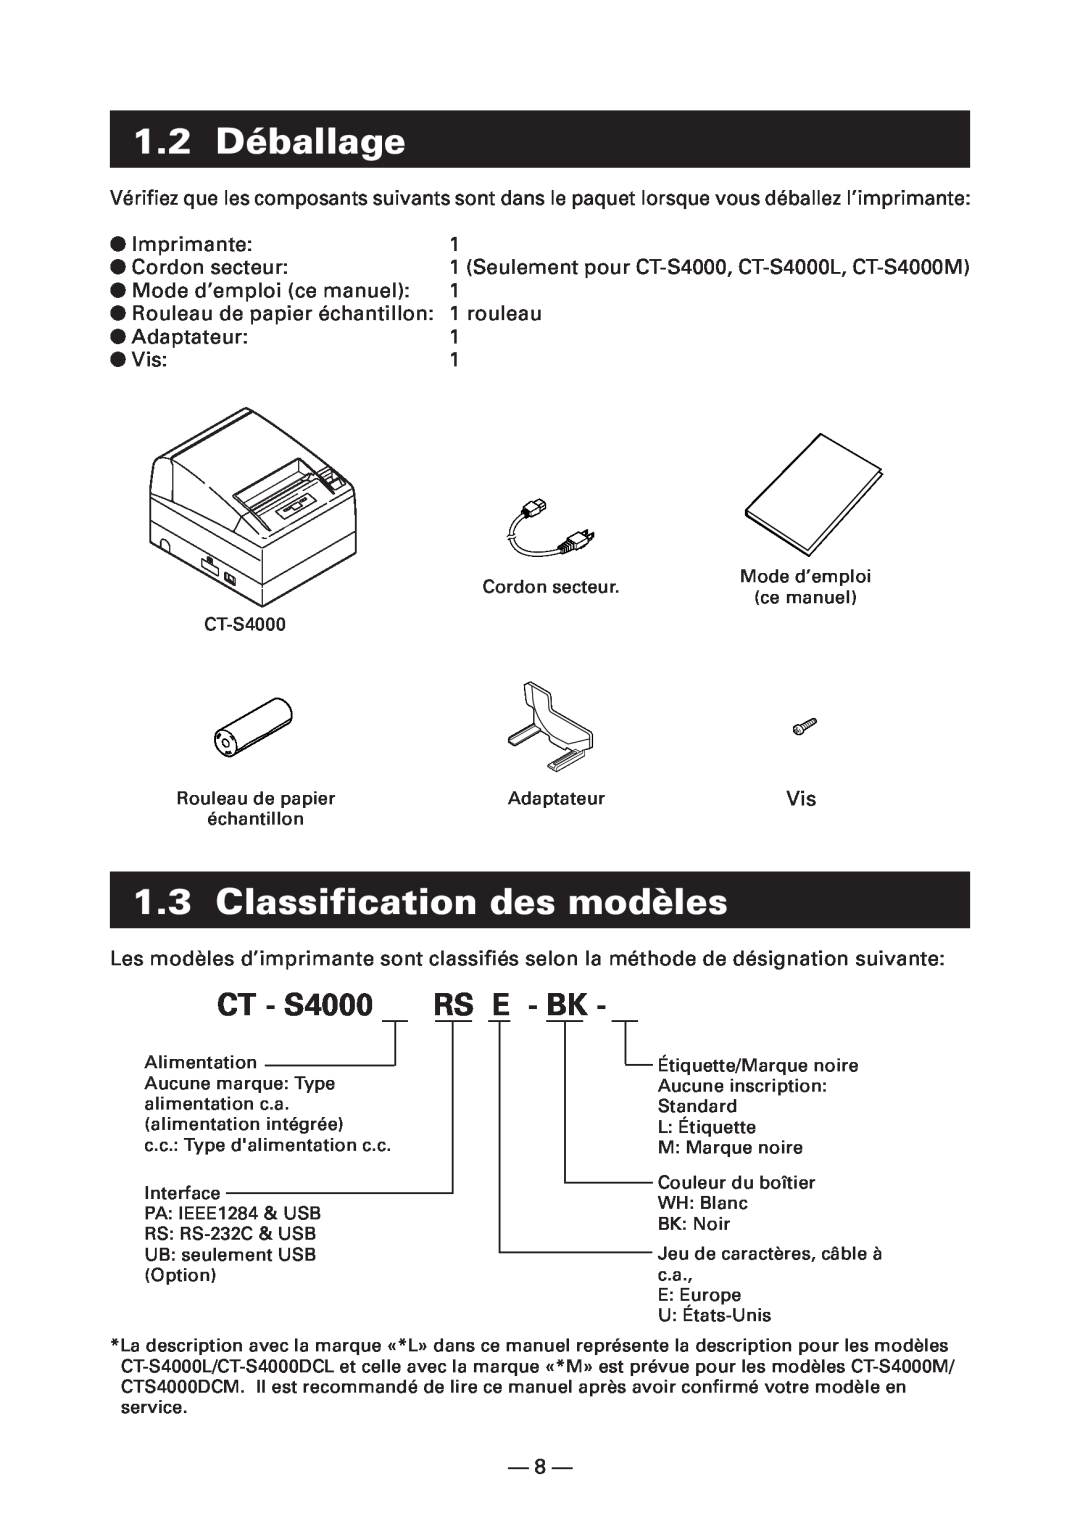 Citizen Systems CT-S4000L 1.2 Déballage, Classification des modèles, CT - S4000 RS E - BK, Imprimante, Cordon secteur 